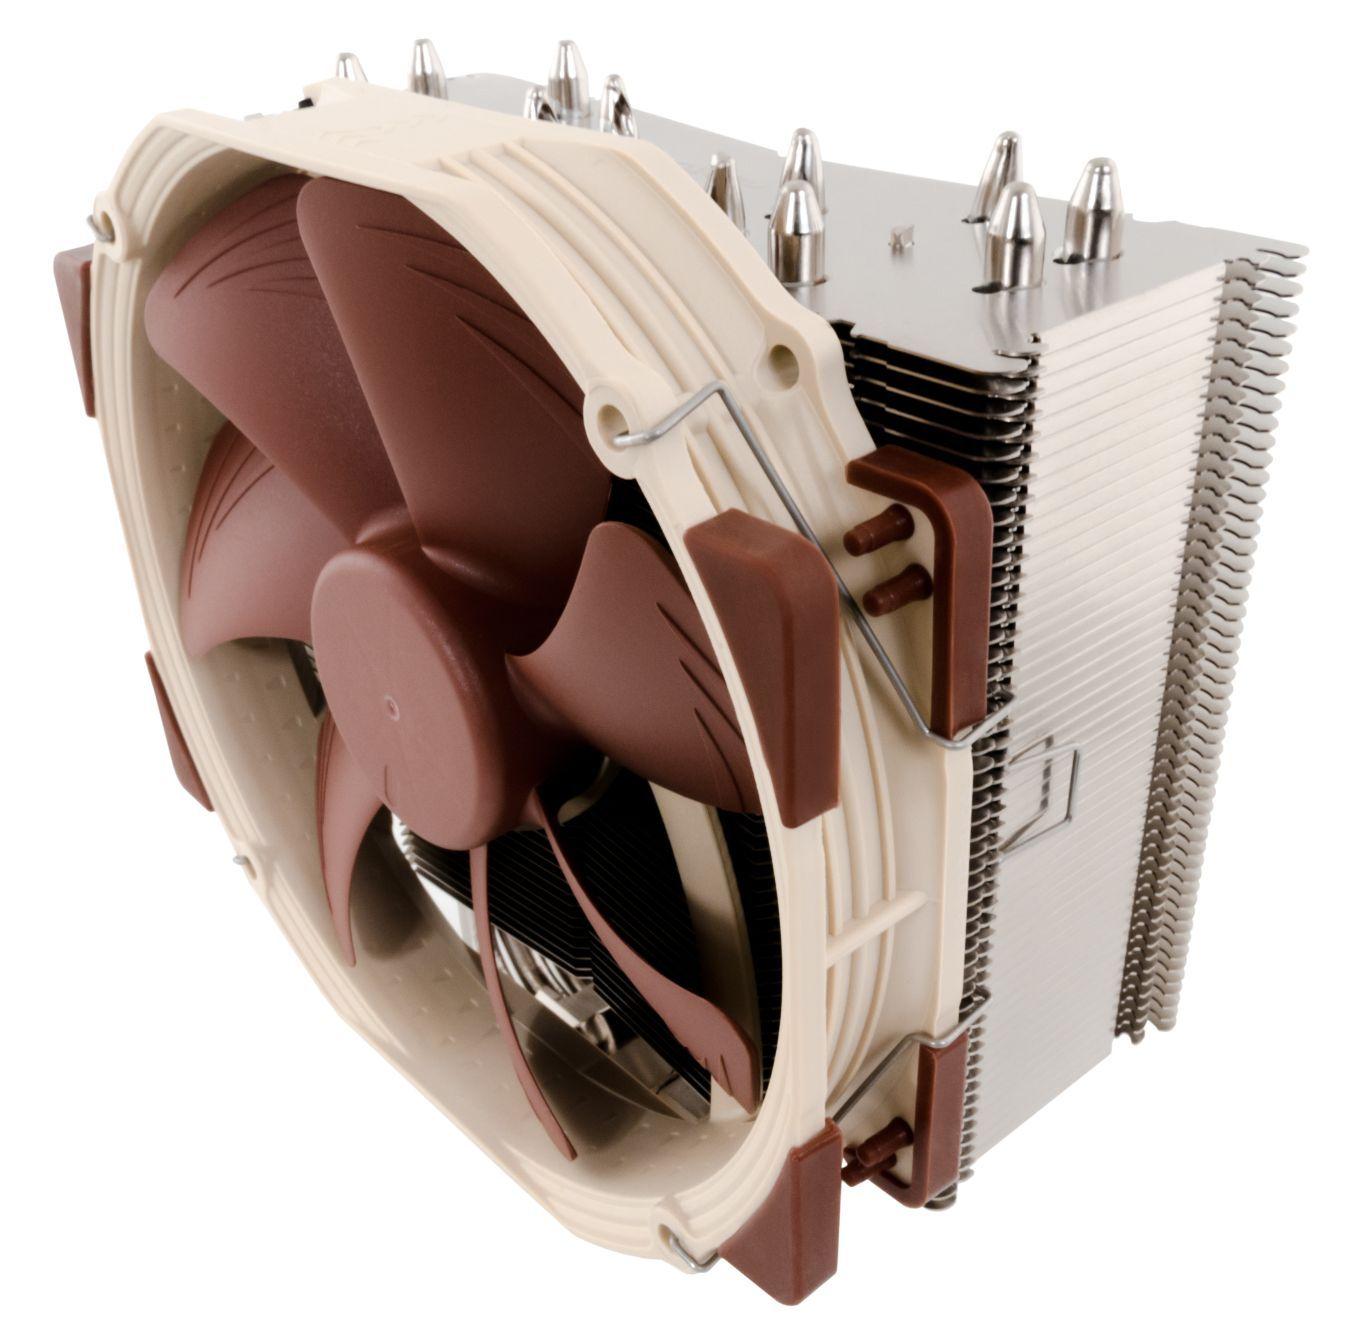 NH-U14S CPU Cooler